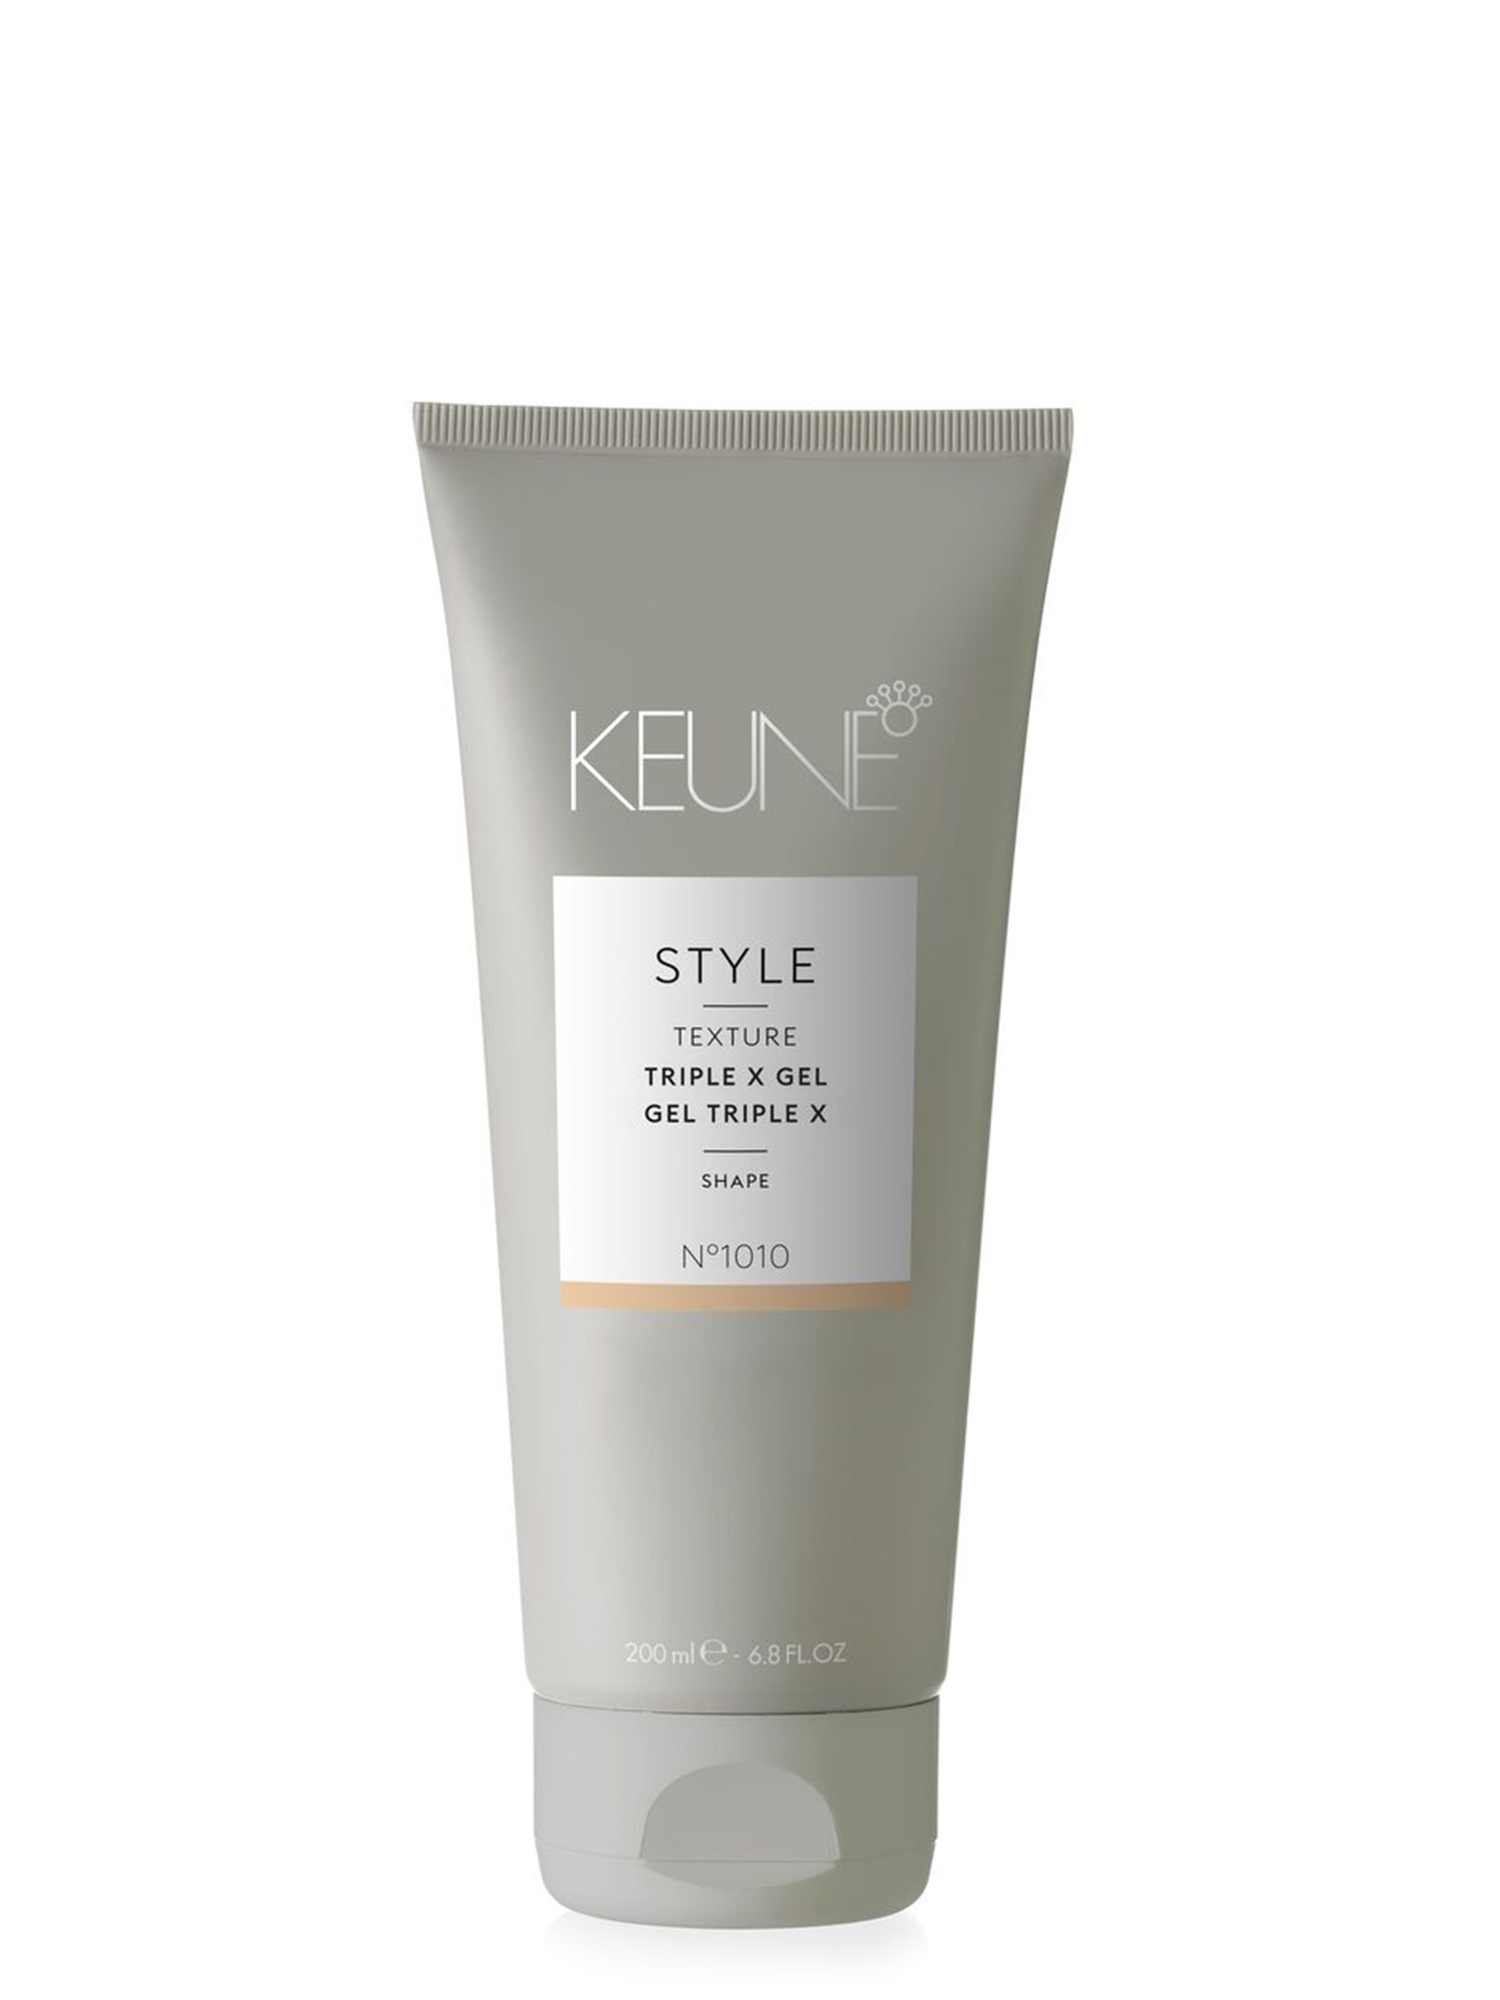 STYLE TRIPLE X GEL de Keune : Ce gel capillaire offre une tenue extrême et une forme parfaite. Idéal pour les cheveux courts à mi-longs, avec texture, définition et une brillance éclatante. Keune.ch.